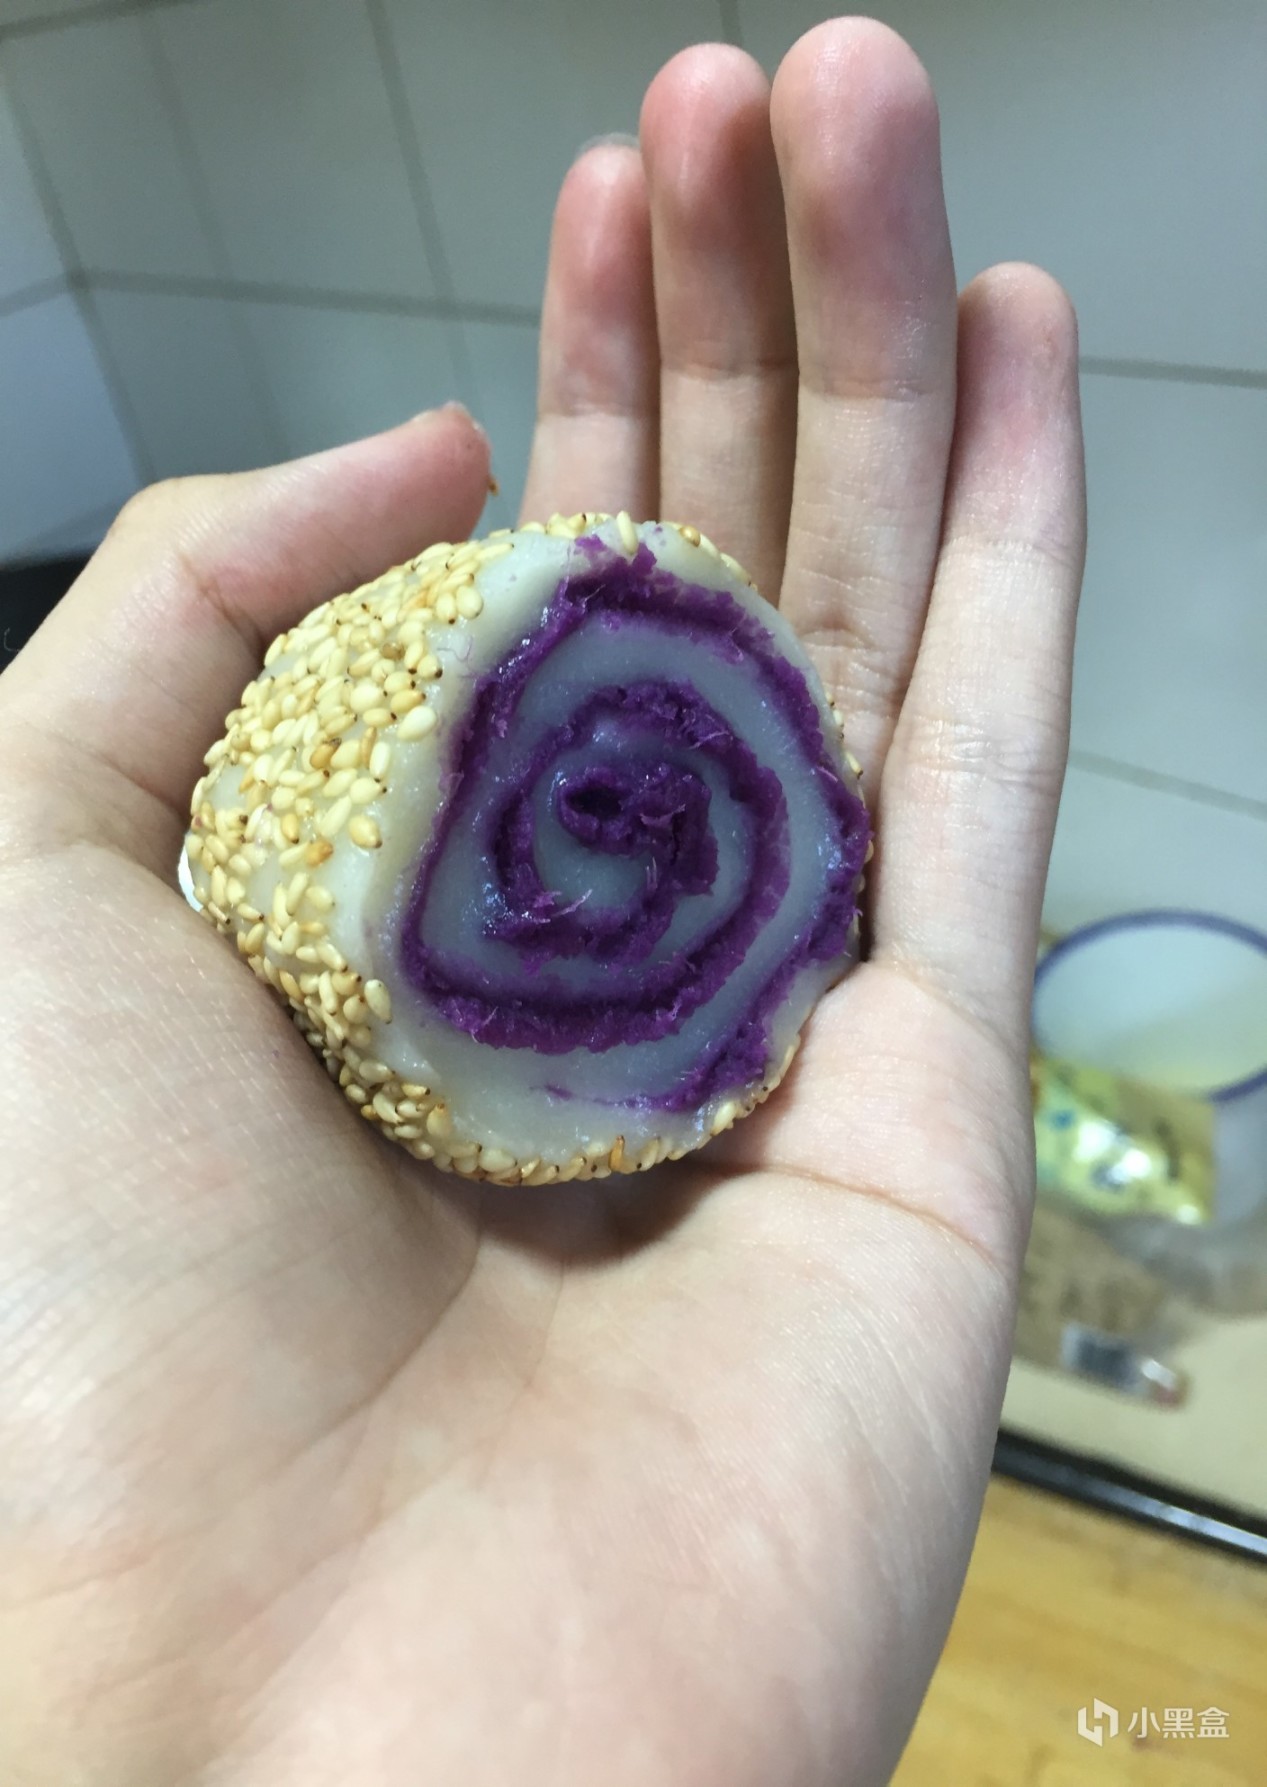 【小飯盒】憨憨甜品之：糯米紫薯卷